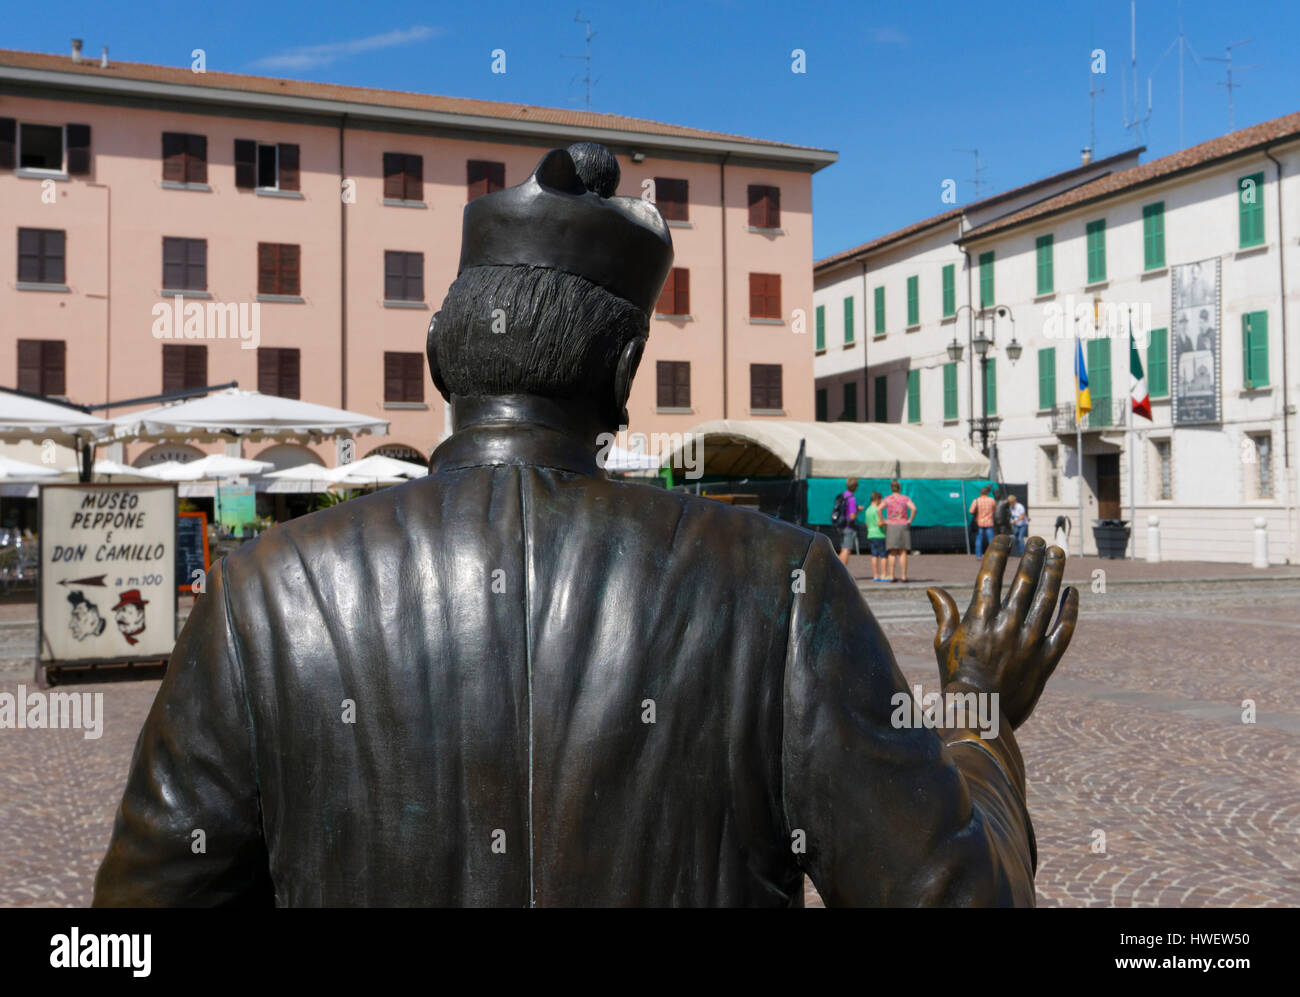 Don Camillo statue in Matteotti square, Brescello (Reggio Emilia) - Emilia Romagna, Italy Stock Photo